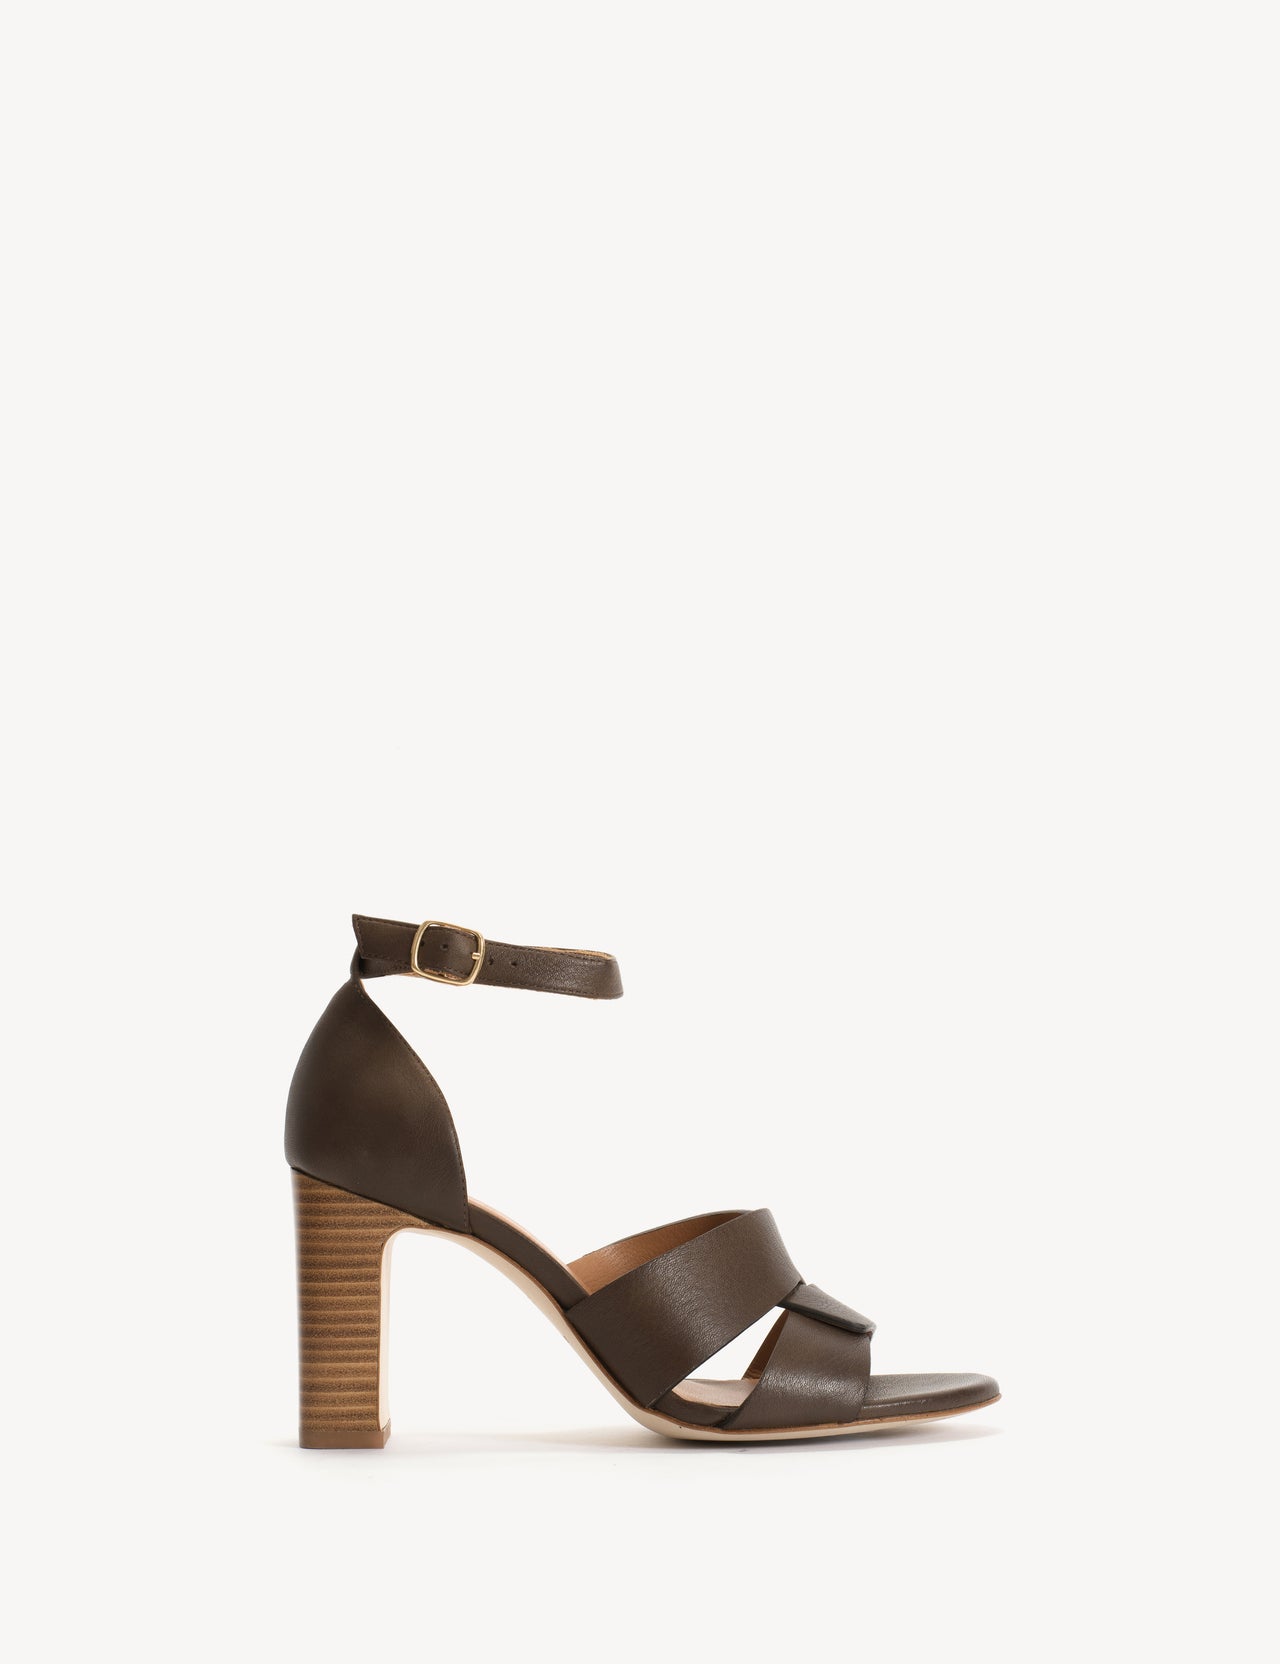 Lulu Sandal In Dark Brown Calfskin with 75mm Heel